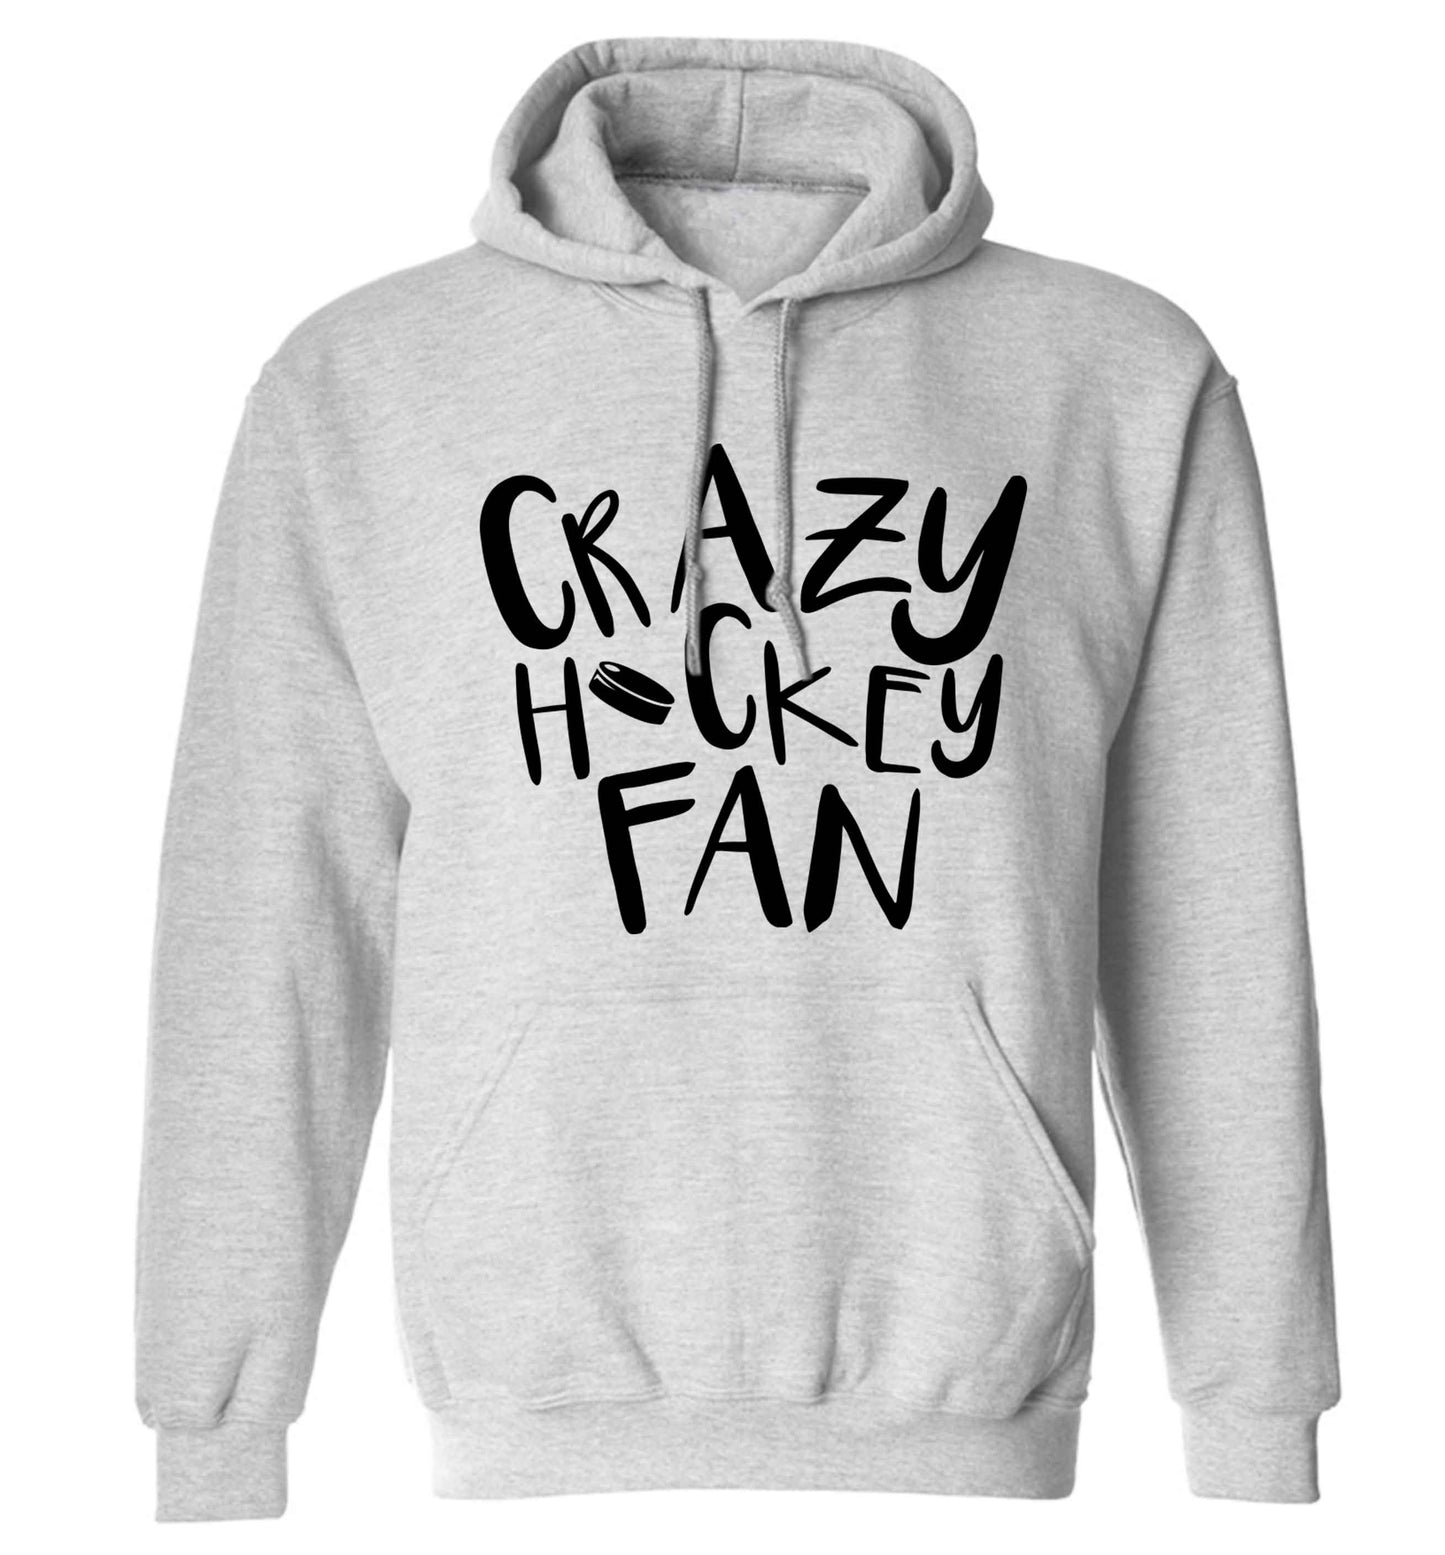 Crazy hockey fan adults unisex grey hoodie 2XL